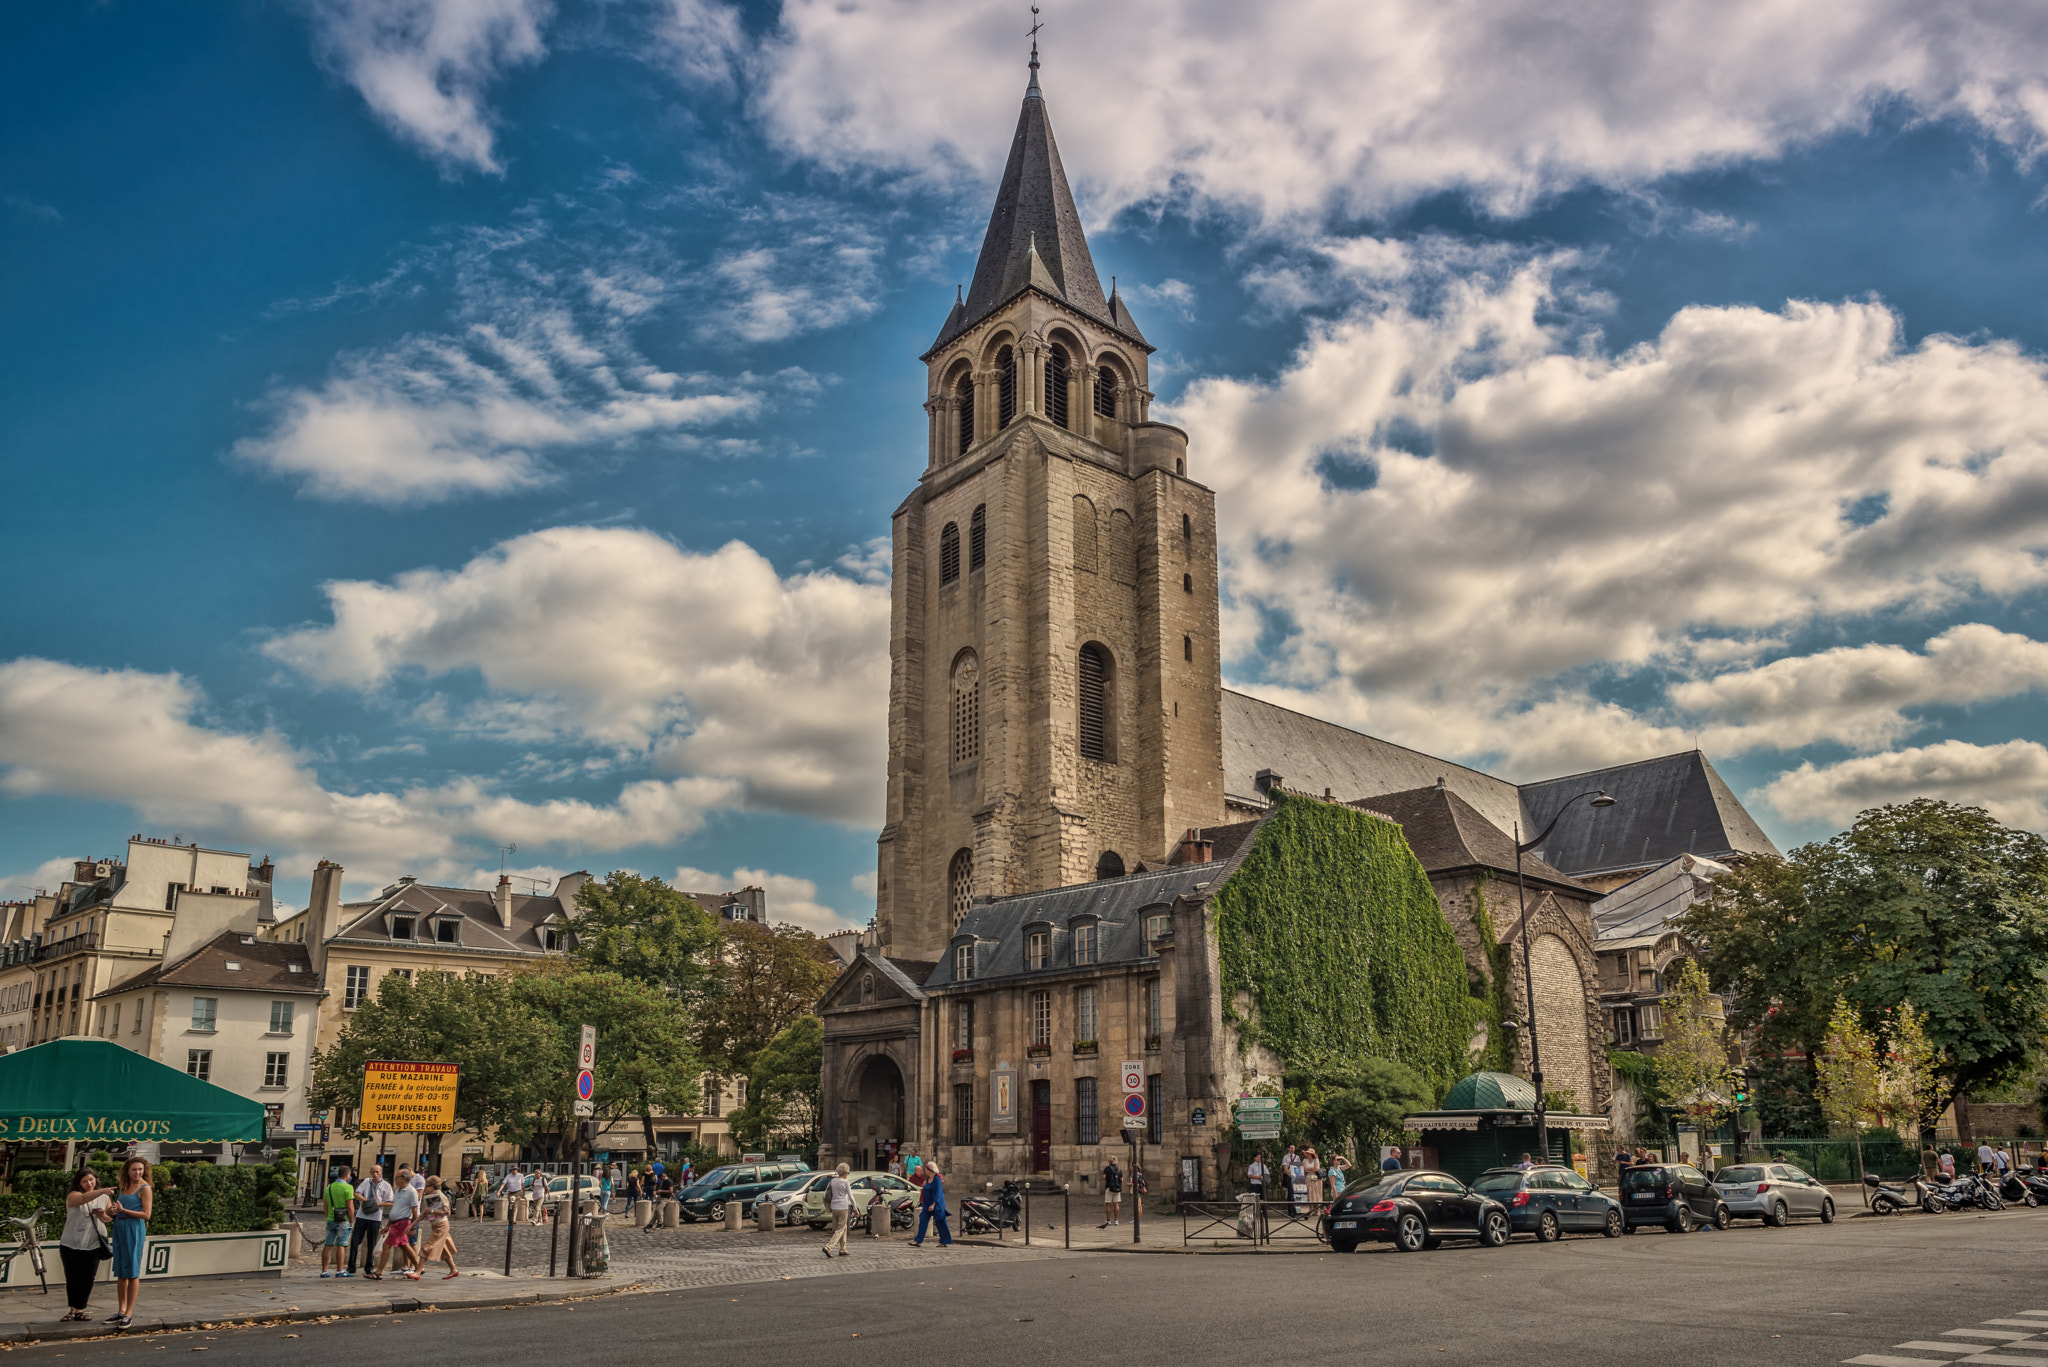 Abbey of Saint-Germain-des-Prés, Paris